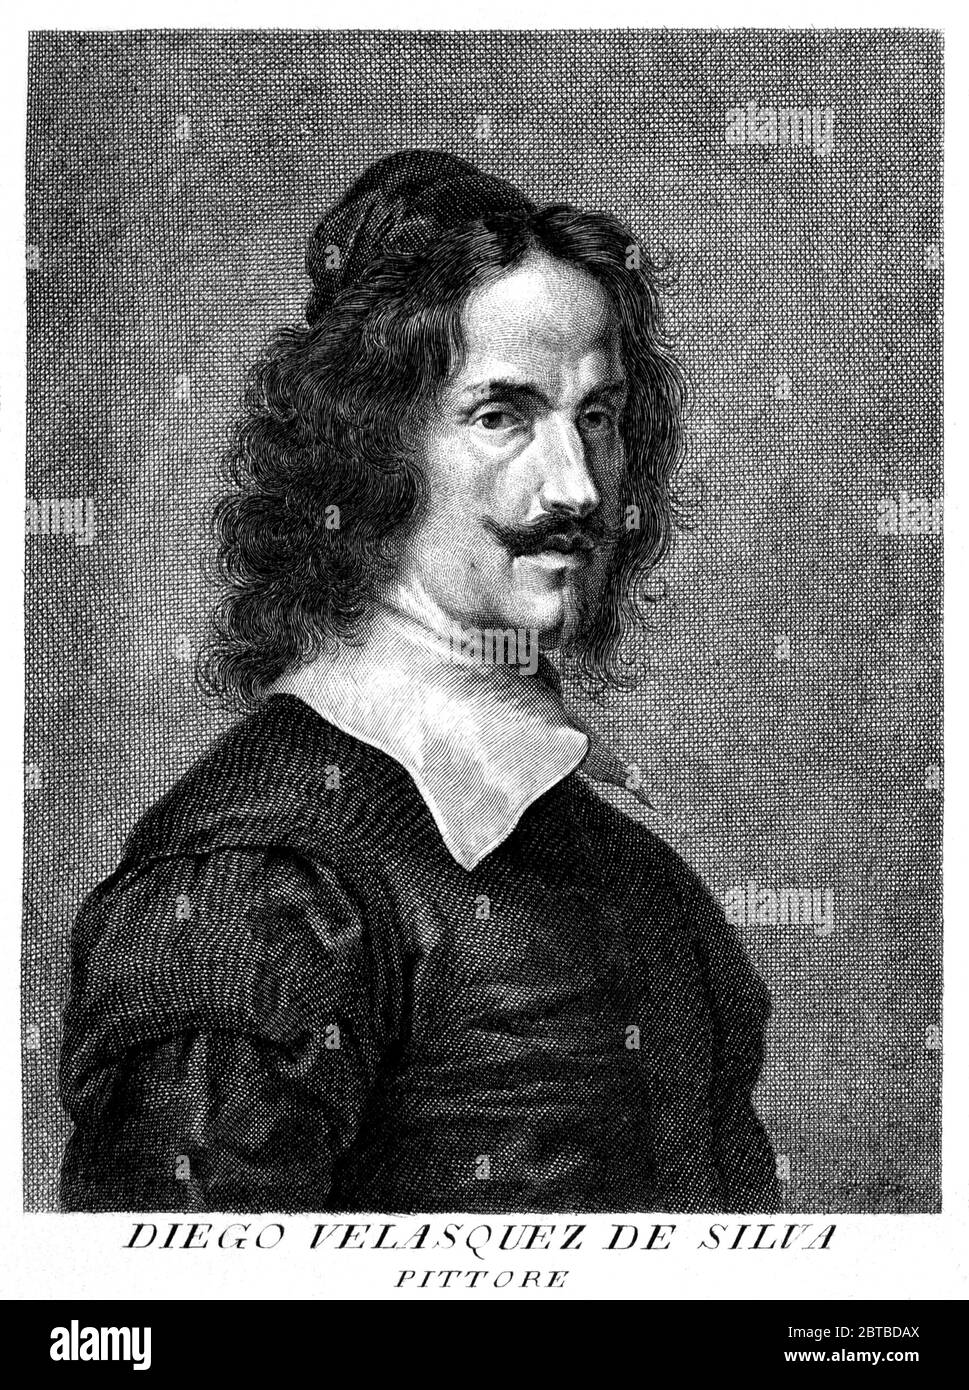 1640 , ESPAGNE : le peintre espagnol DIEGO VELASQUEZ Da SILVA ( 1599 - 1660 ) . Portrait d'un graveur italien non-identifié. - ARTS - ARTI VISIVE - ARTE - PORTRAIT - RITRATTO - HISTOIRE - FOTO STORICHE - barbe - barba - baffi - moustache - chapeau - cappello - collier - colletto - SPAGNA - incisione - illustrazione - illustration - Velasques -- Archivio GBB Banque D'Images